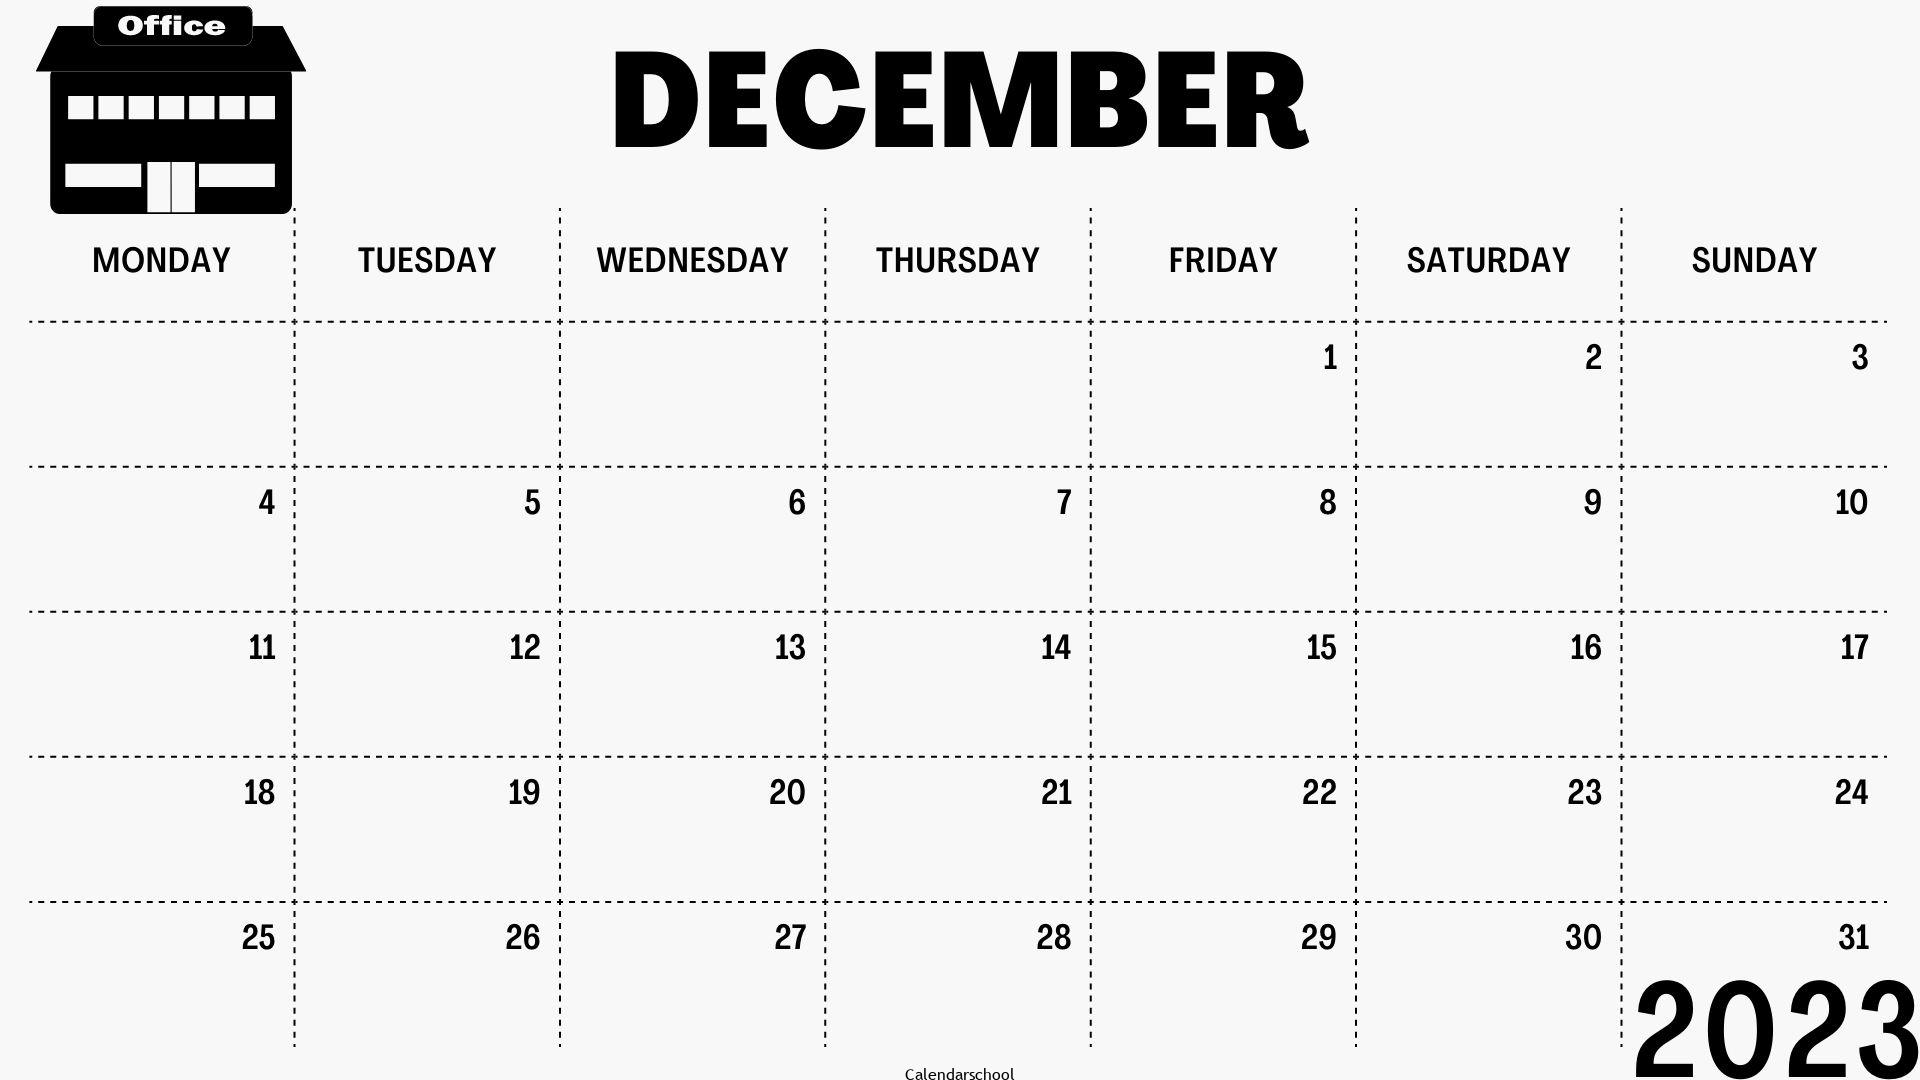 December 2023 Printable Calendar By Month